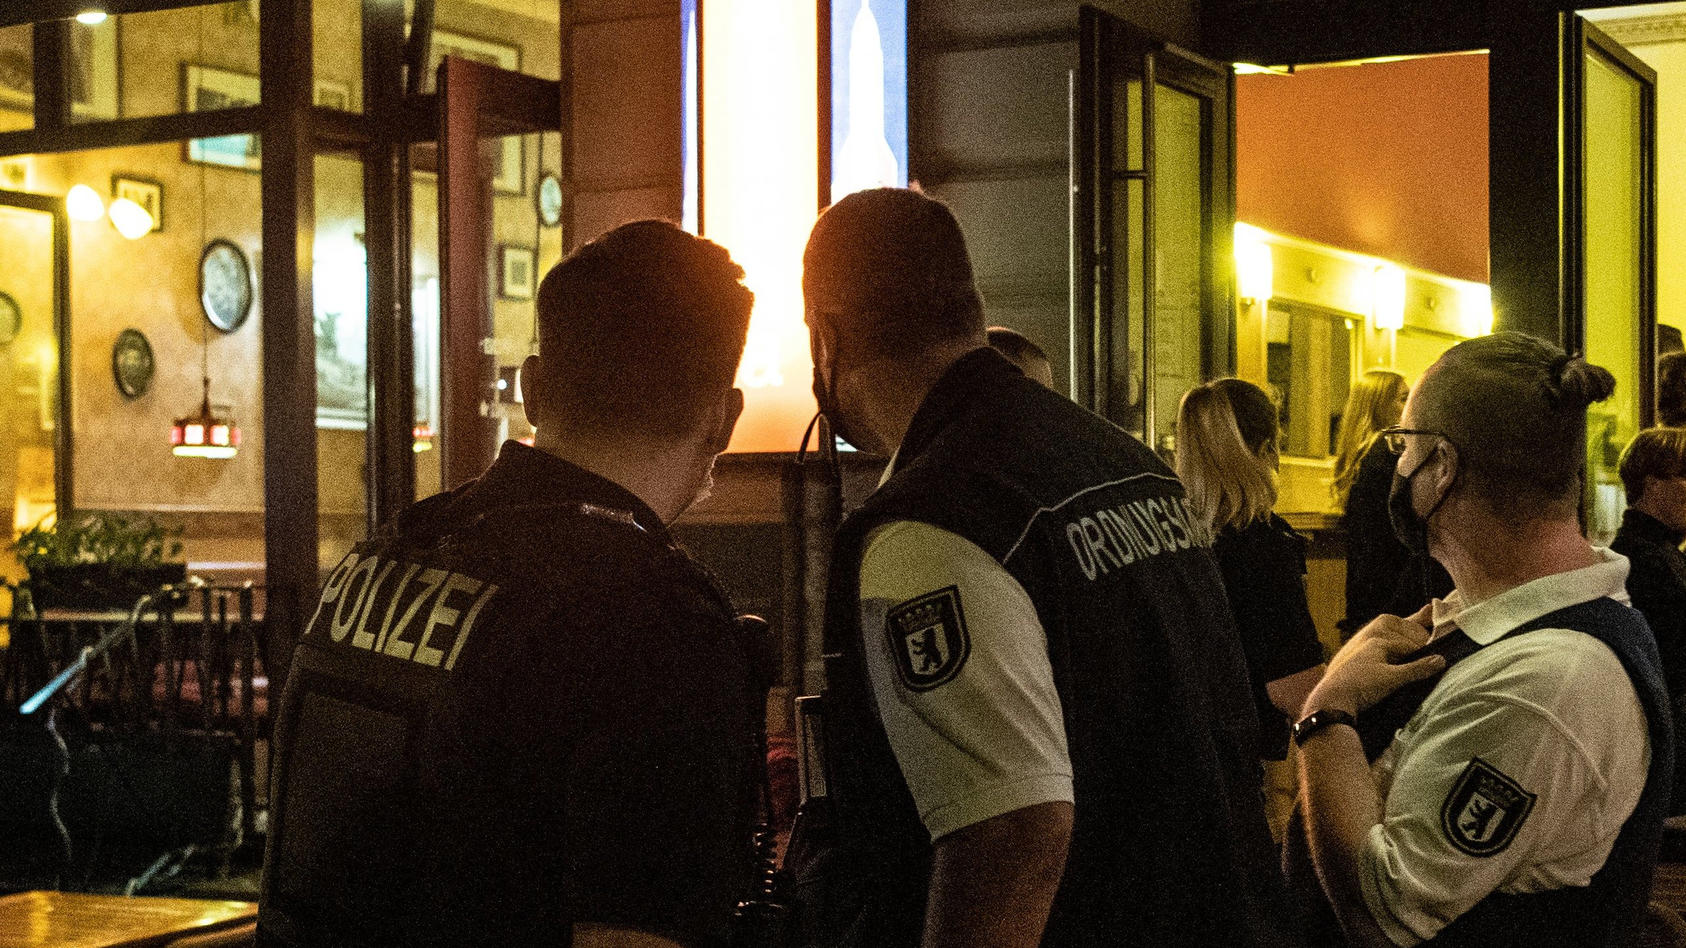 ARCHIV - 24.07.2020, Berlin: Ein Polizeibeamter und zwei Mitarbeiter des Ordnungsamtes stehen vor einem Lokal. Angesichts der verschärften Corona-Regeln hält die Gewerkschaft der Polizei (GdP) eine Impfpflicht für Polizisten erforderlich. (zu dpa «Be